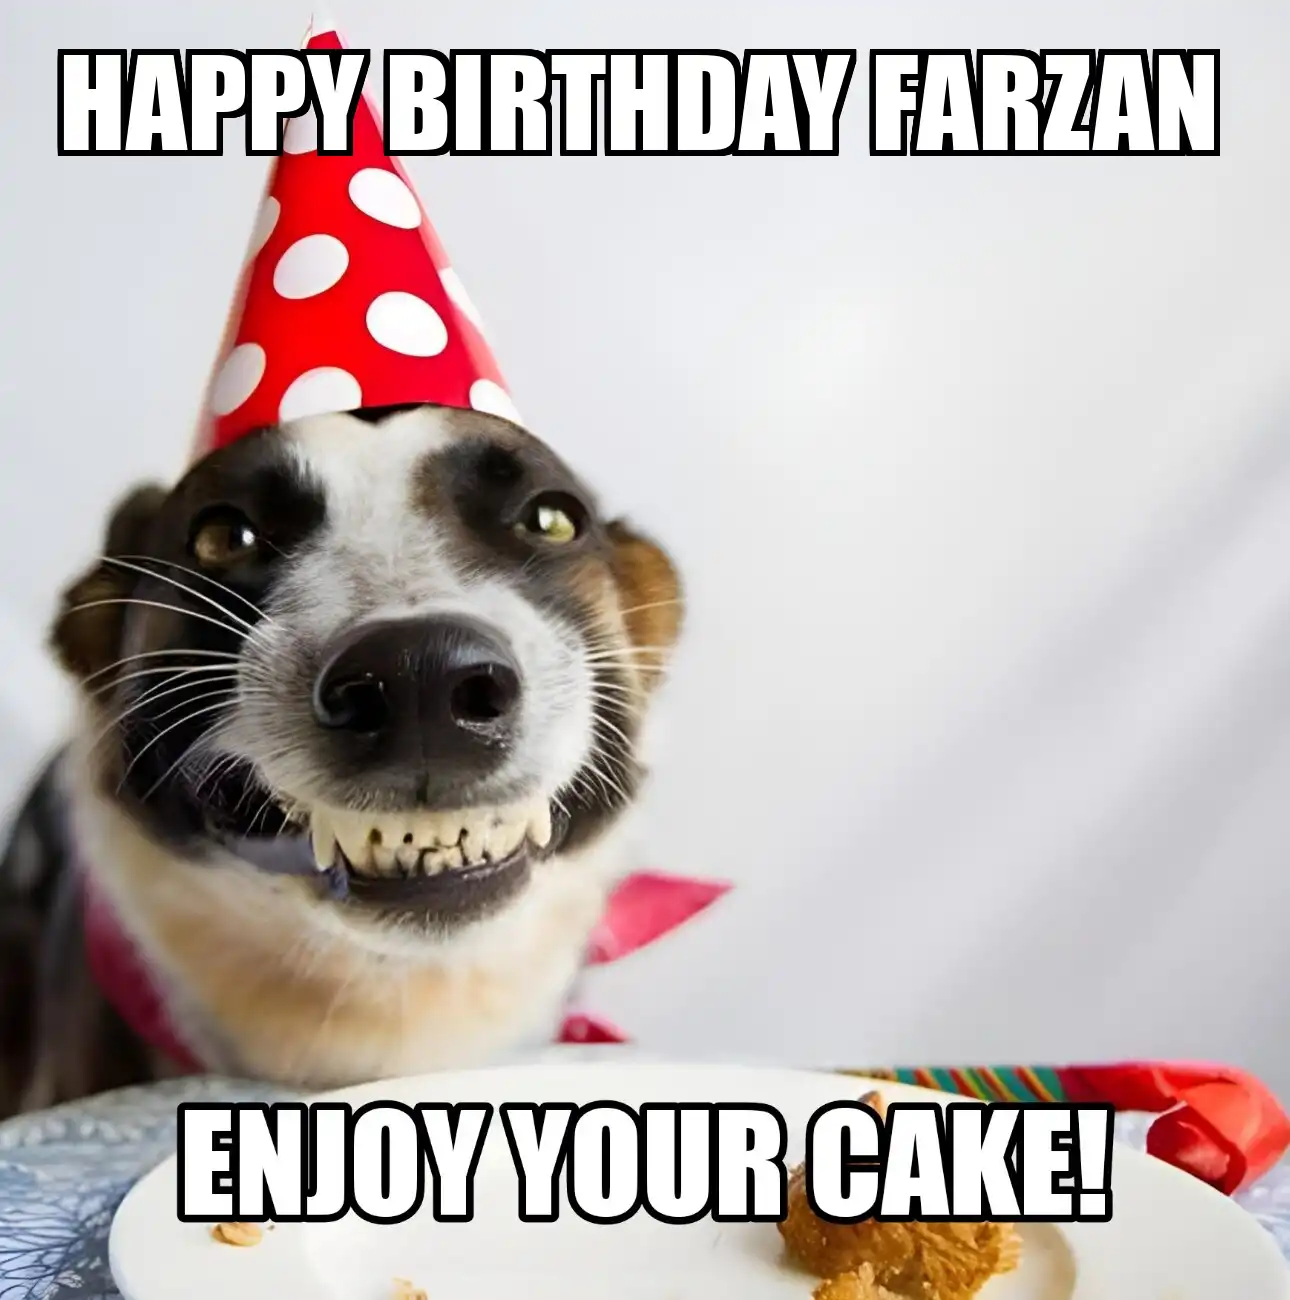 Happy Birthday Farzan Enjoy Your Cake Dog Meme